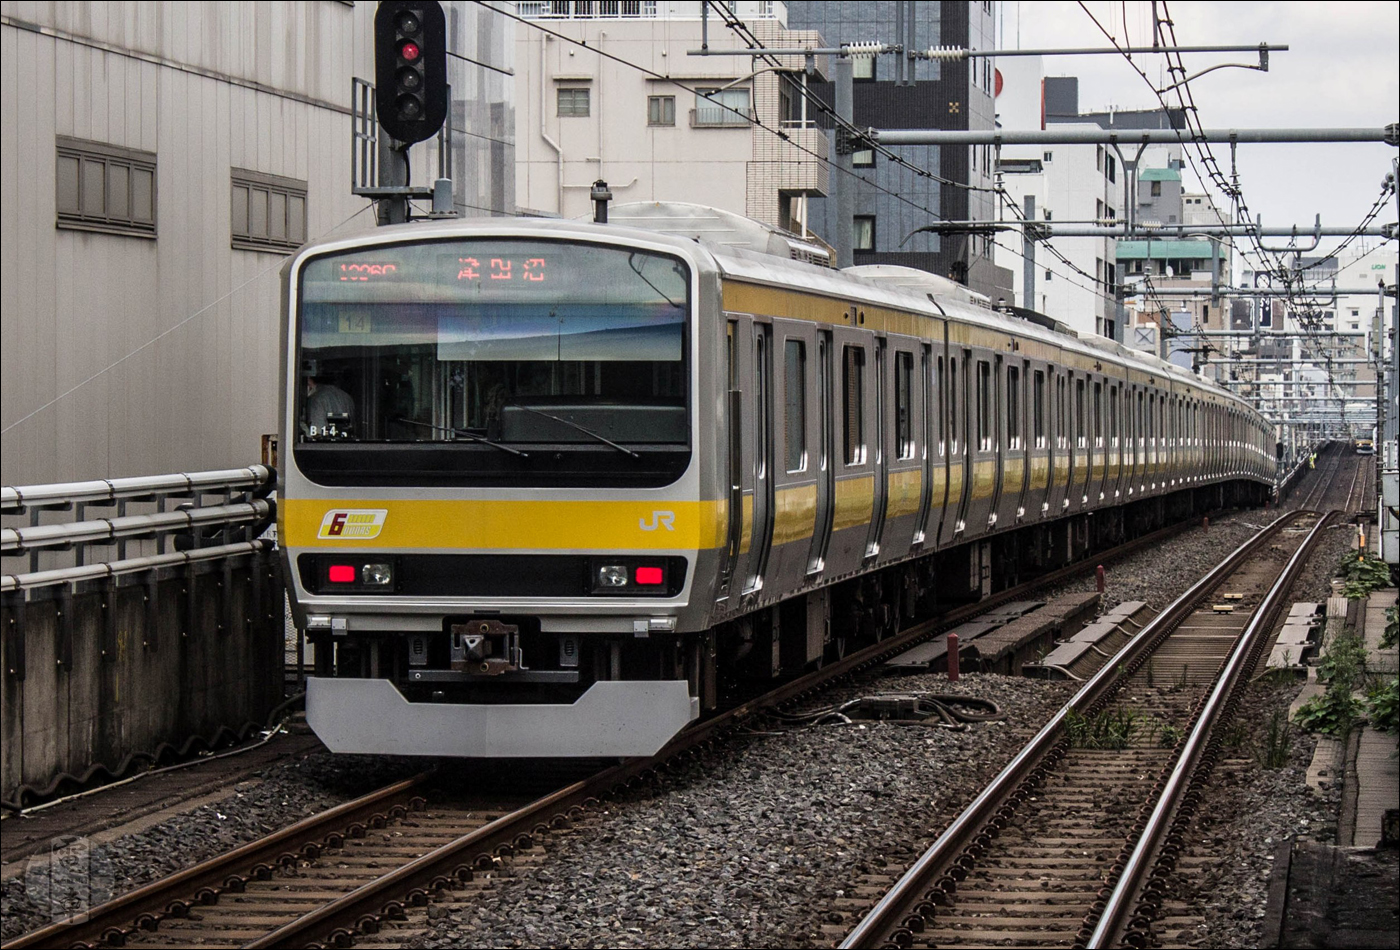 JR East E231-es sorozatú motorvonat a Chuo-Sobu vonalon, Akihabara (秋葉原) közelében. A széria számos magánvasúti járműnek, így a Tokyu 5000-es, a Keikyu 1000-es és a Sotetsu 10000-es járműnek is az alapjaként szolgált.